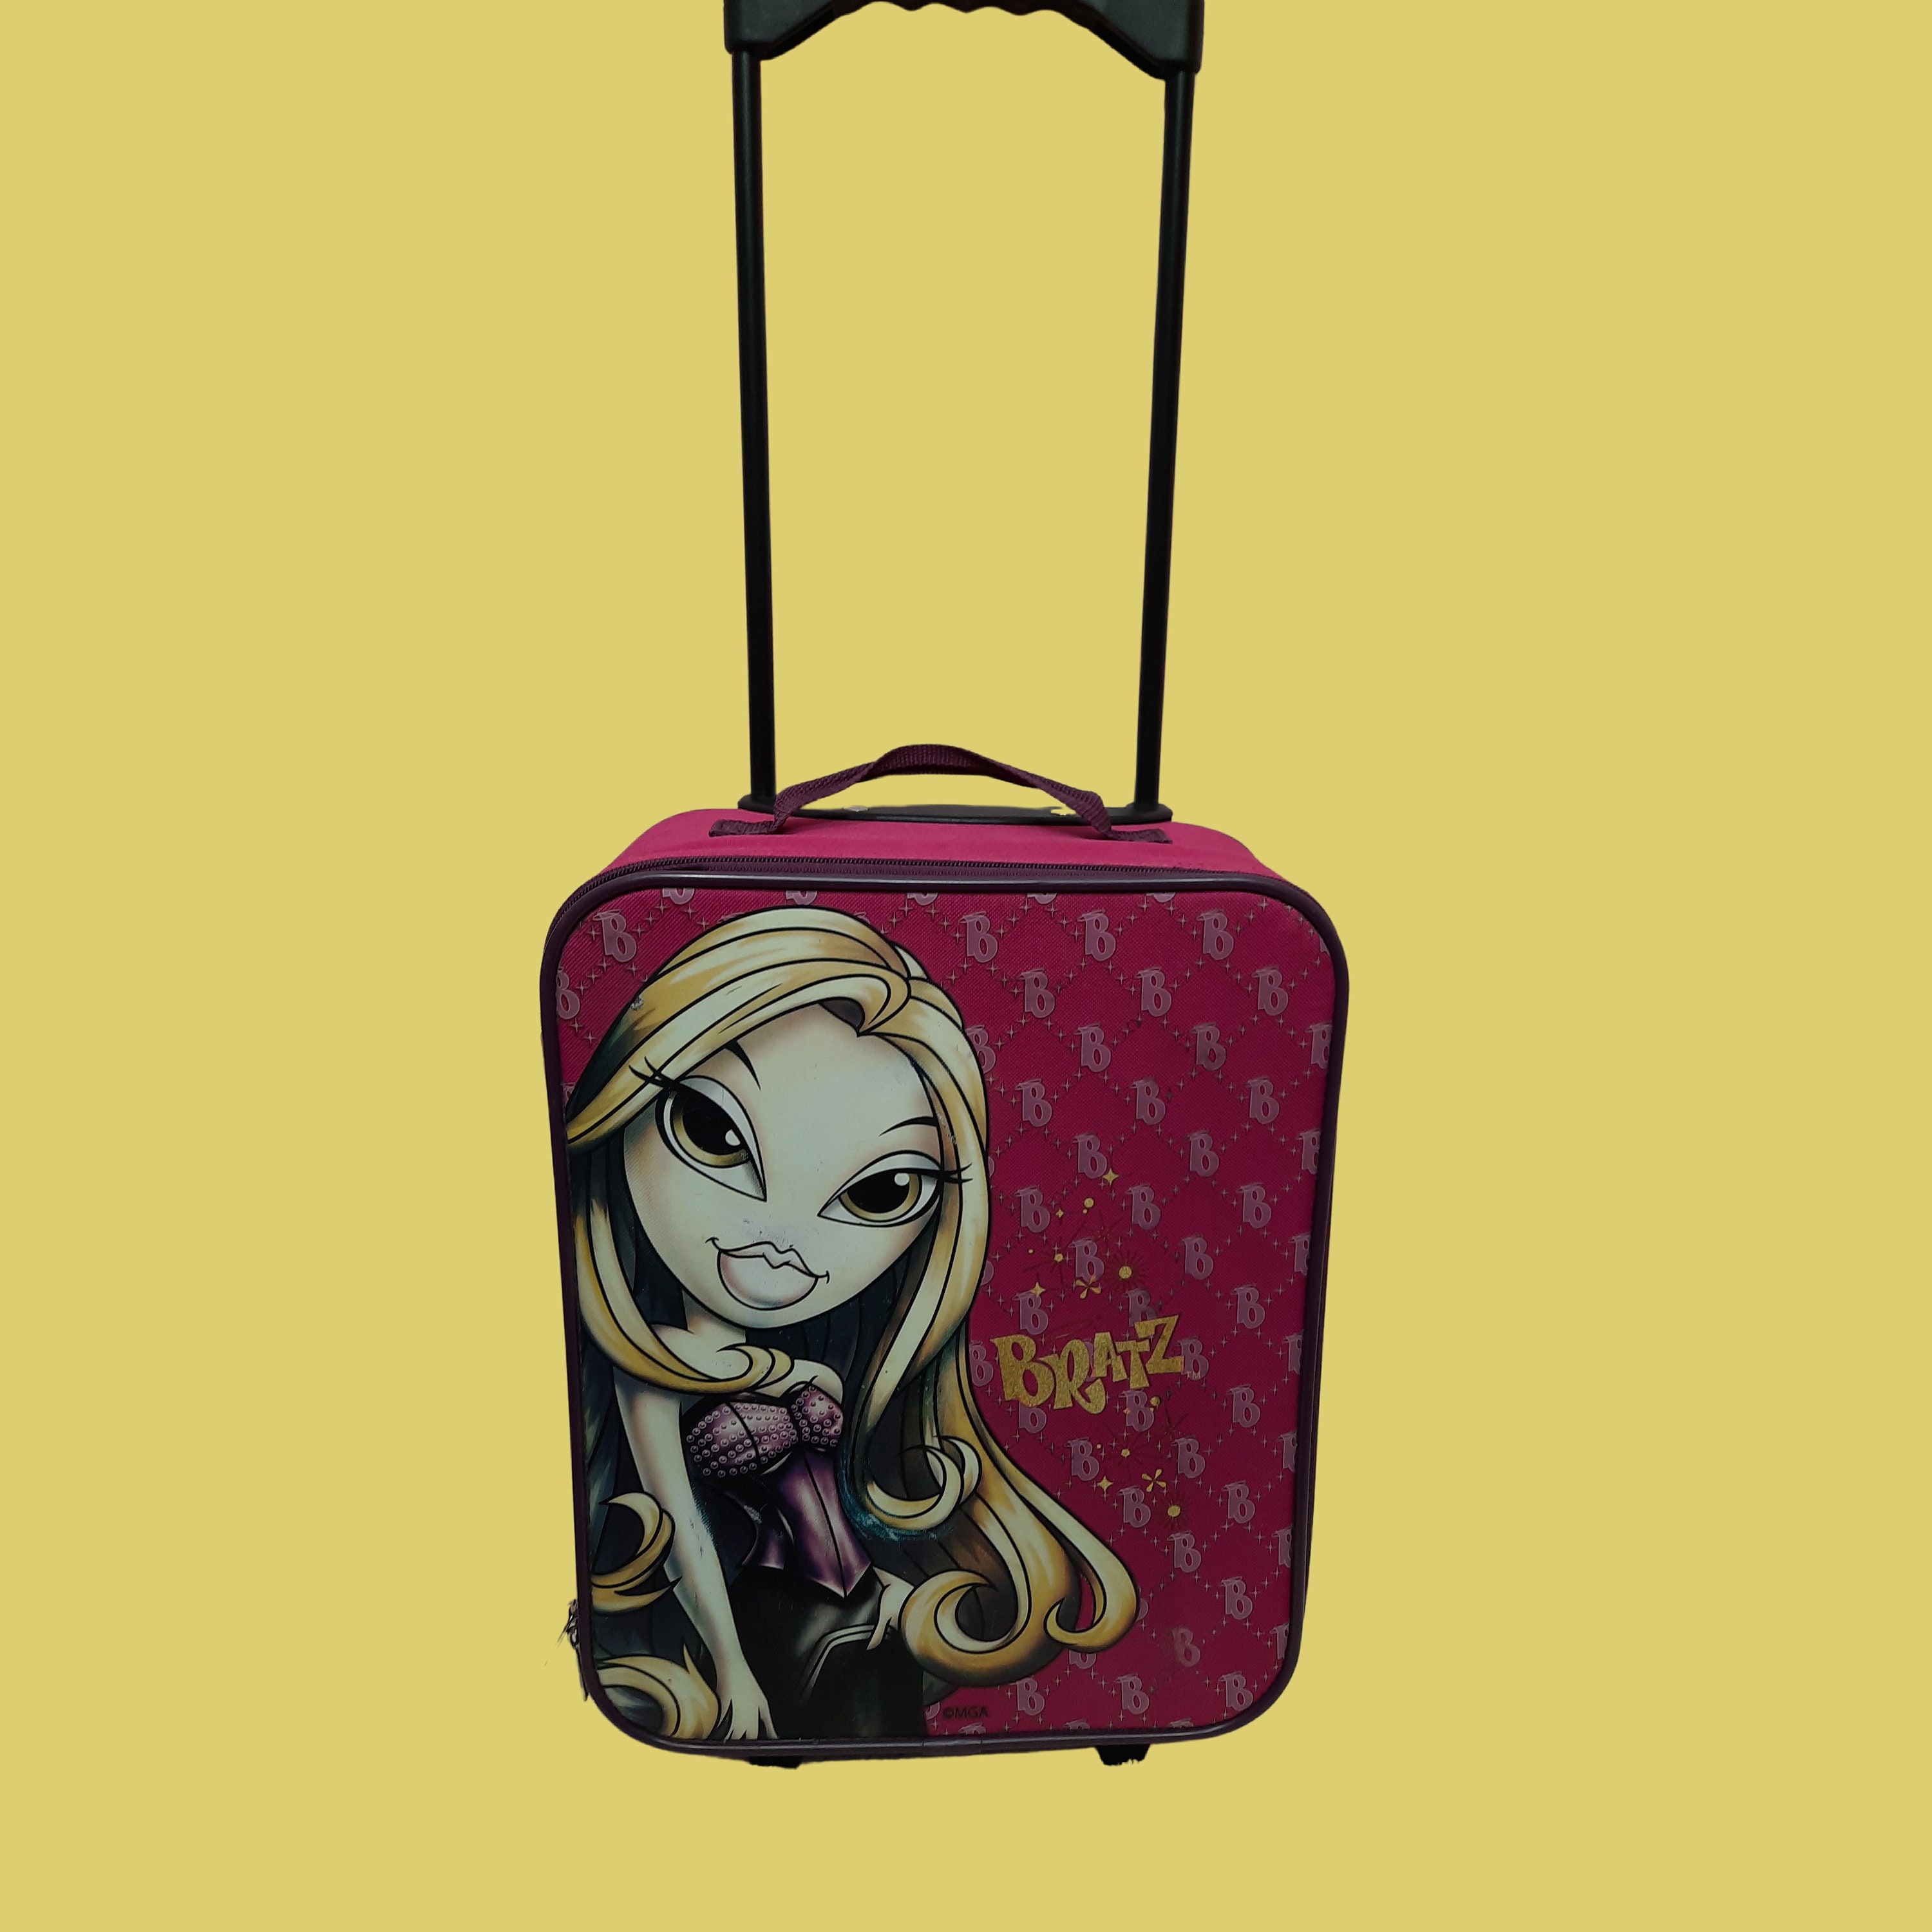 Lil' Bratz Rolling Travel Bag Luggage 